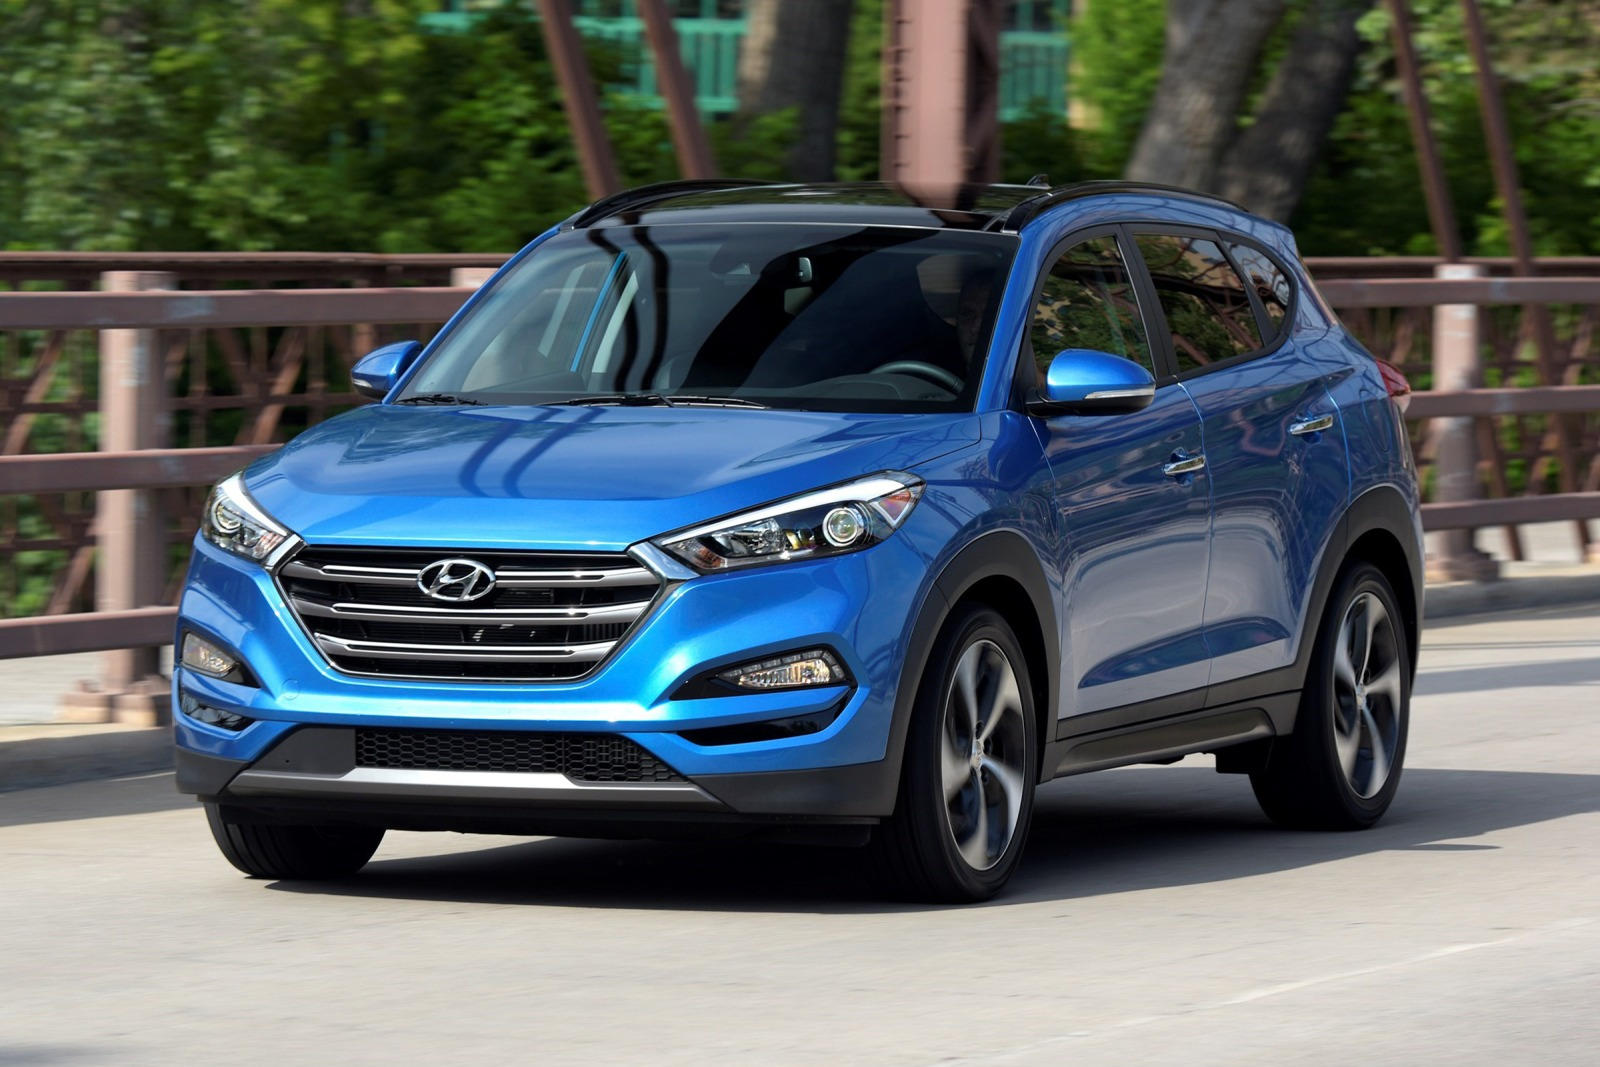 2017 Hyundai Tucson Review, Trims, Specs, Price, New Interior Features